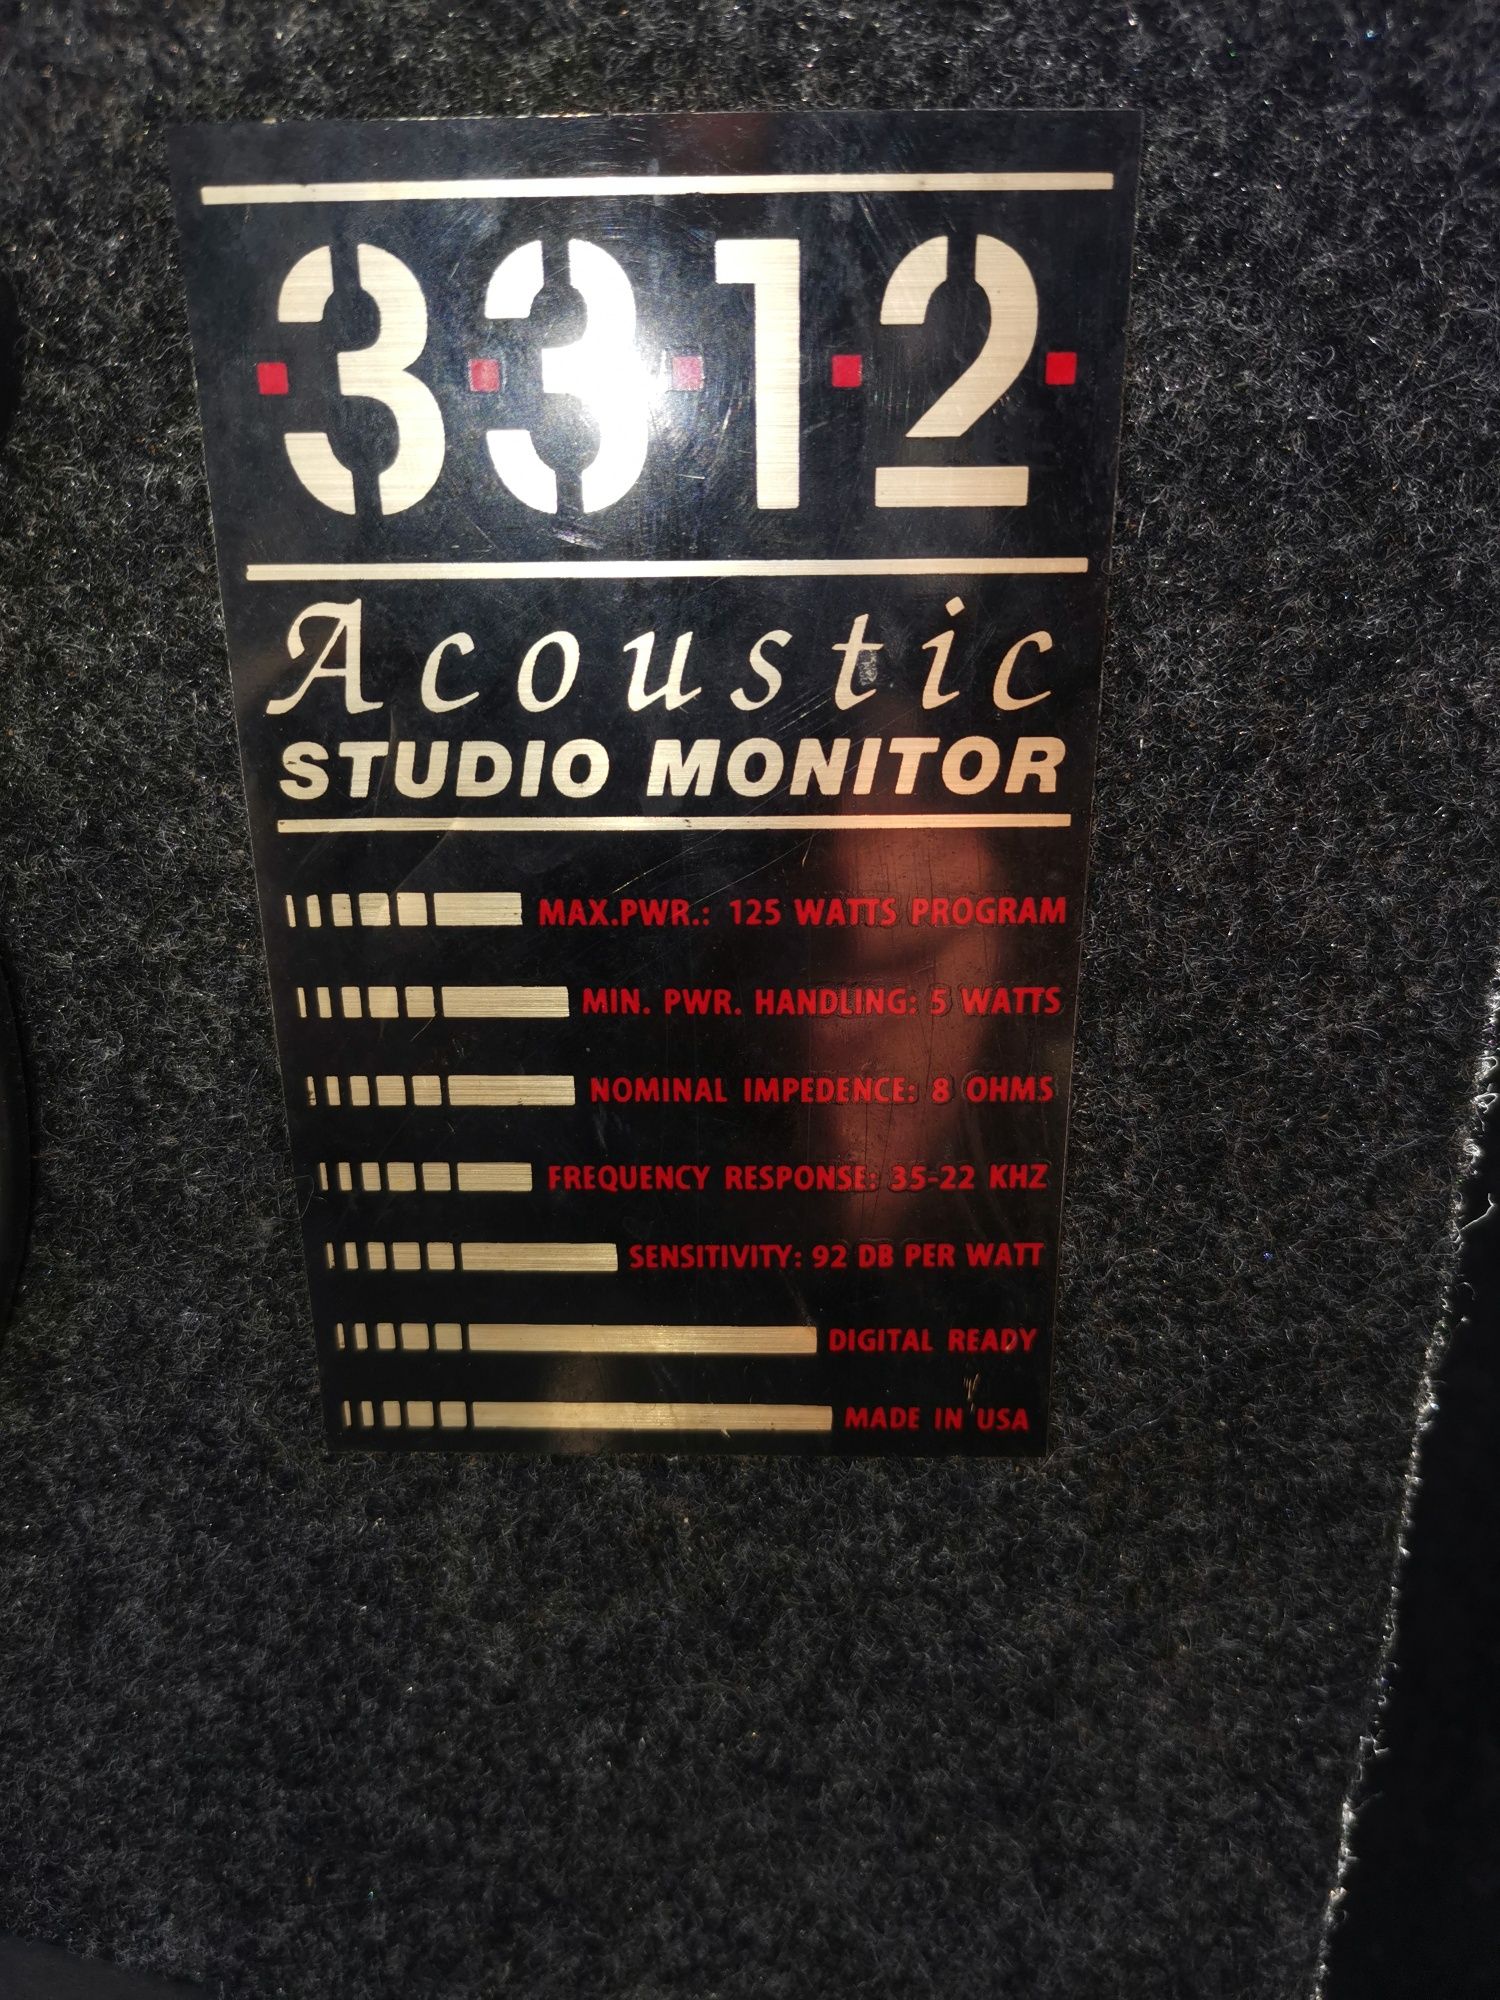 Boxe acustic studio monitor 3312